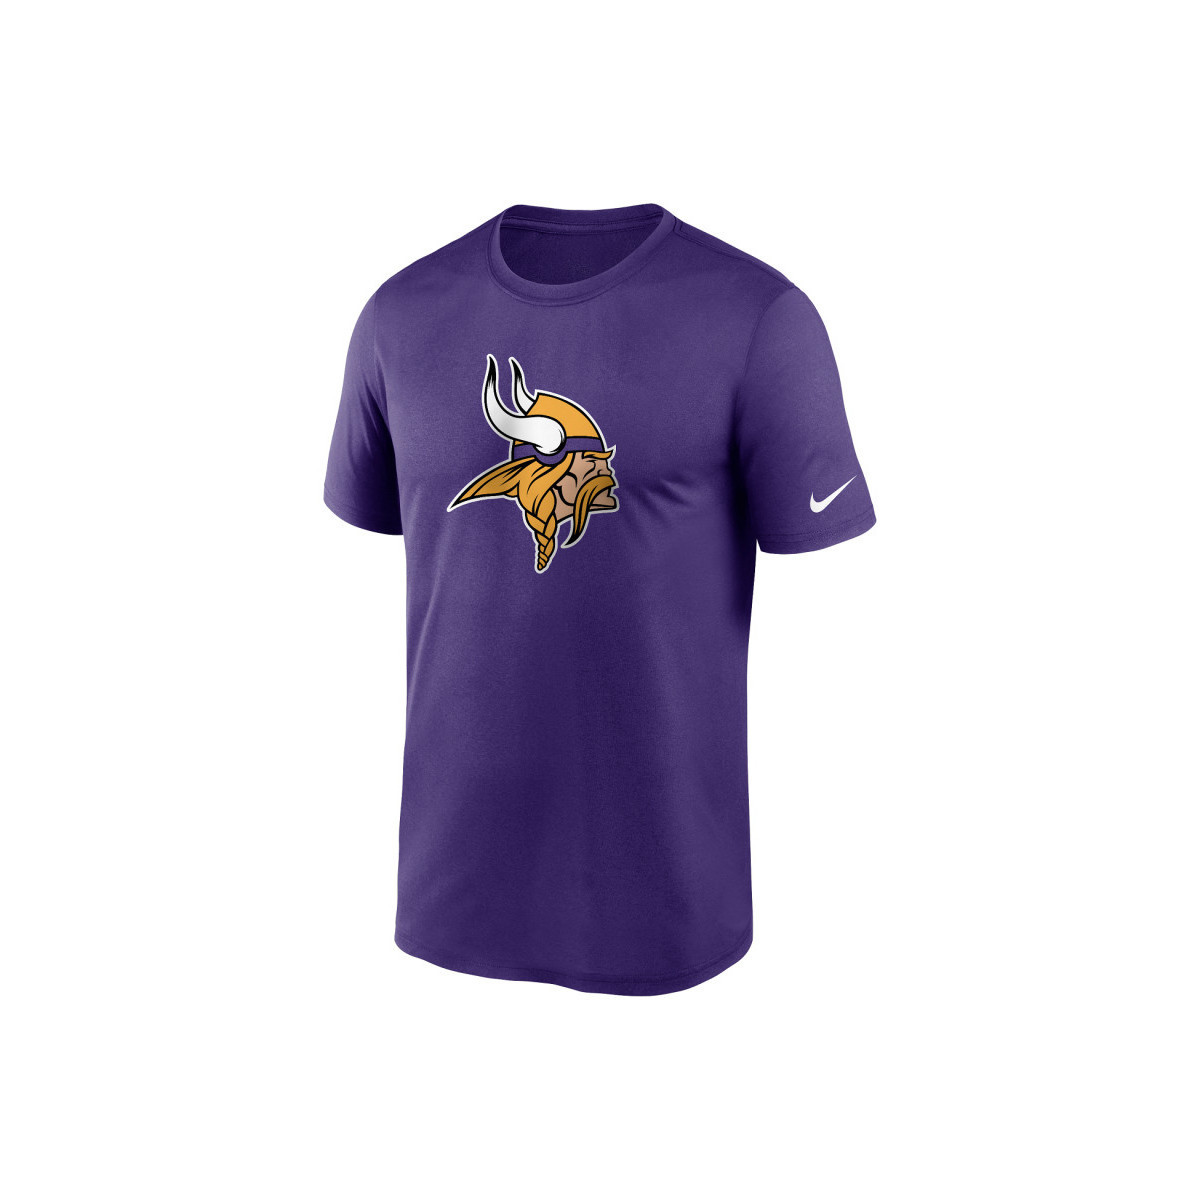 Nike Multicolore T-shirt NFL Minnesota Vikings ndGkgBw9